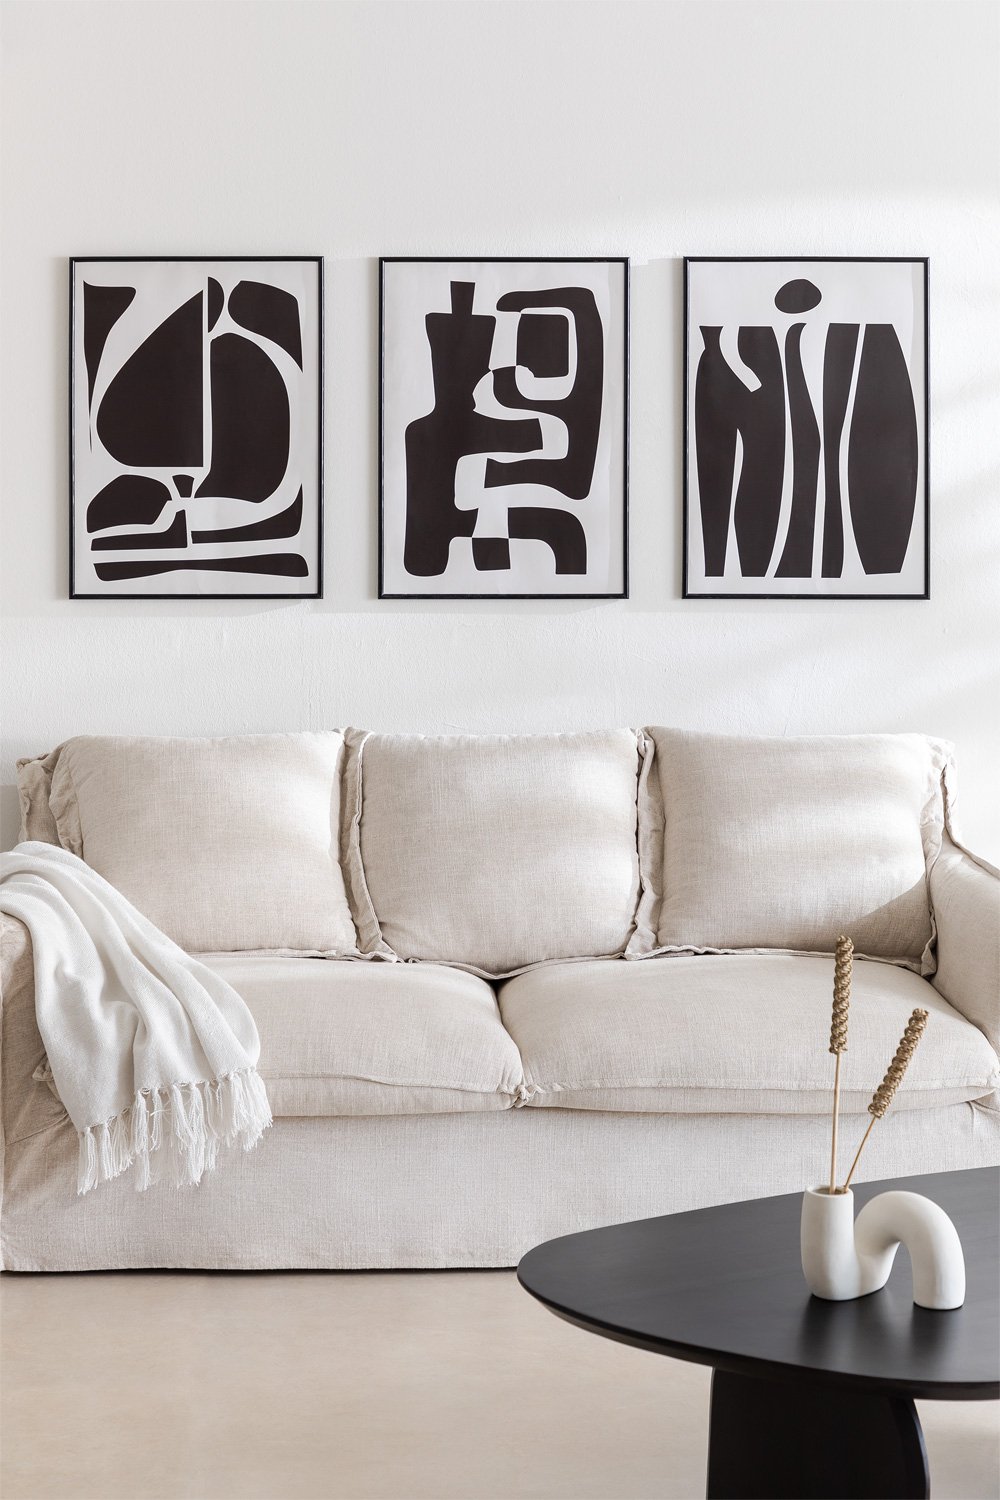 Set de 3 Affiches Décoratives (50x70 cm) Gerena, image de la galerie 1